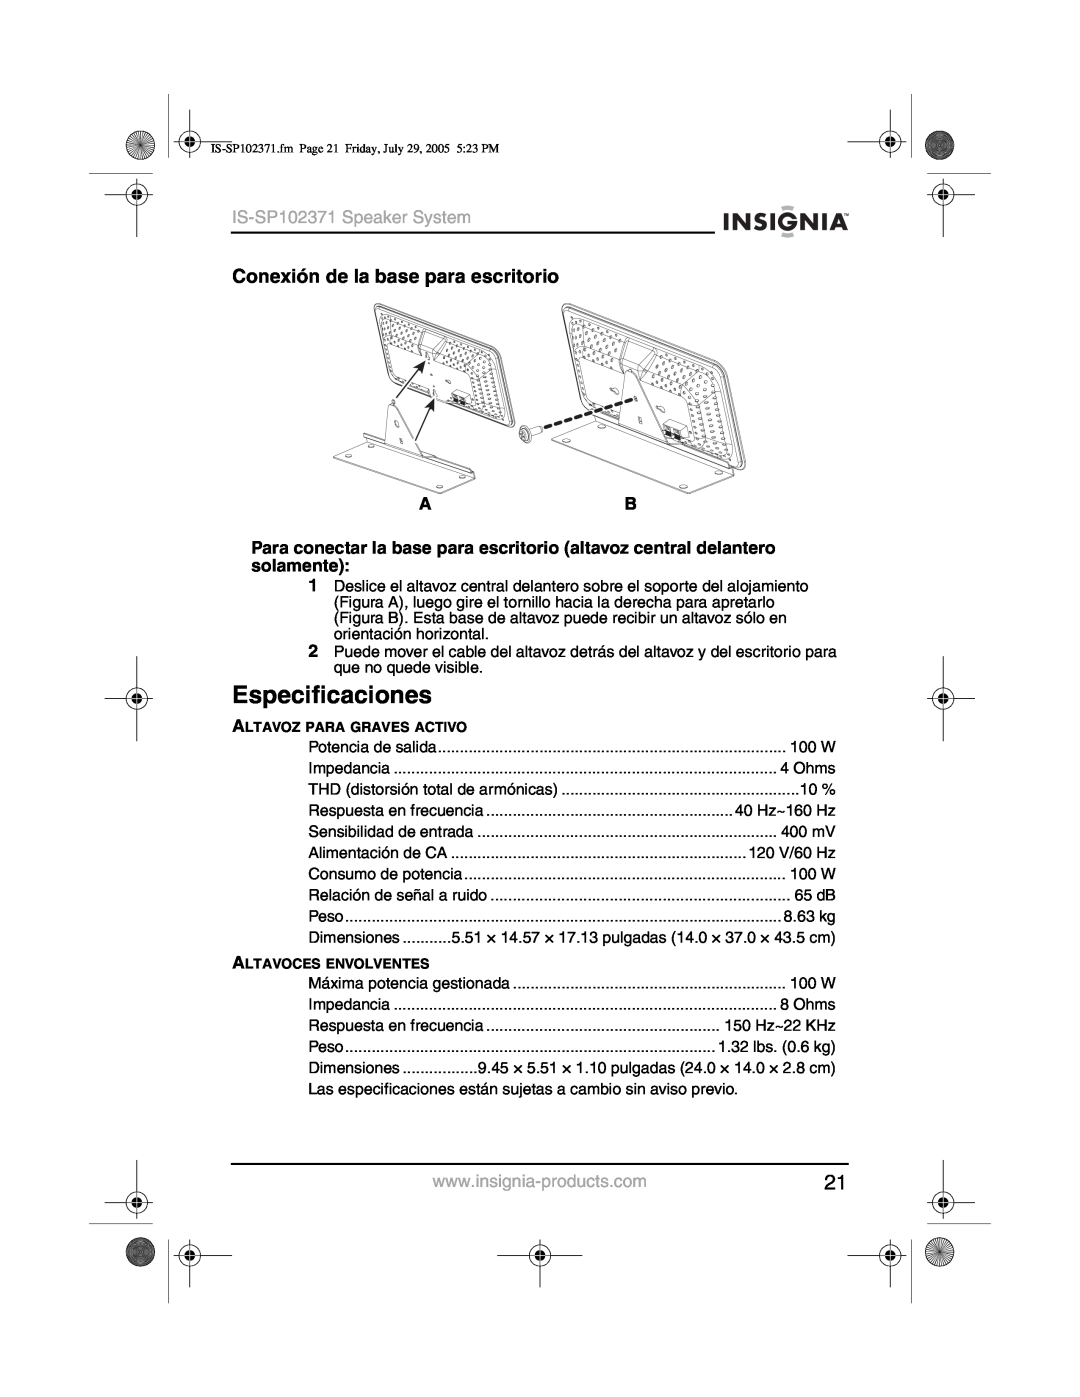 Insignia manual Especificaciones, Conexión de la base para escritorio, IS-SP102371Speaker System 